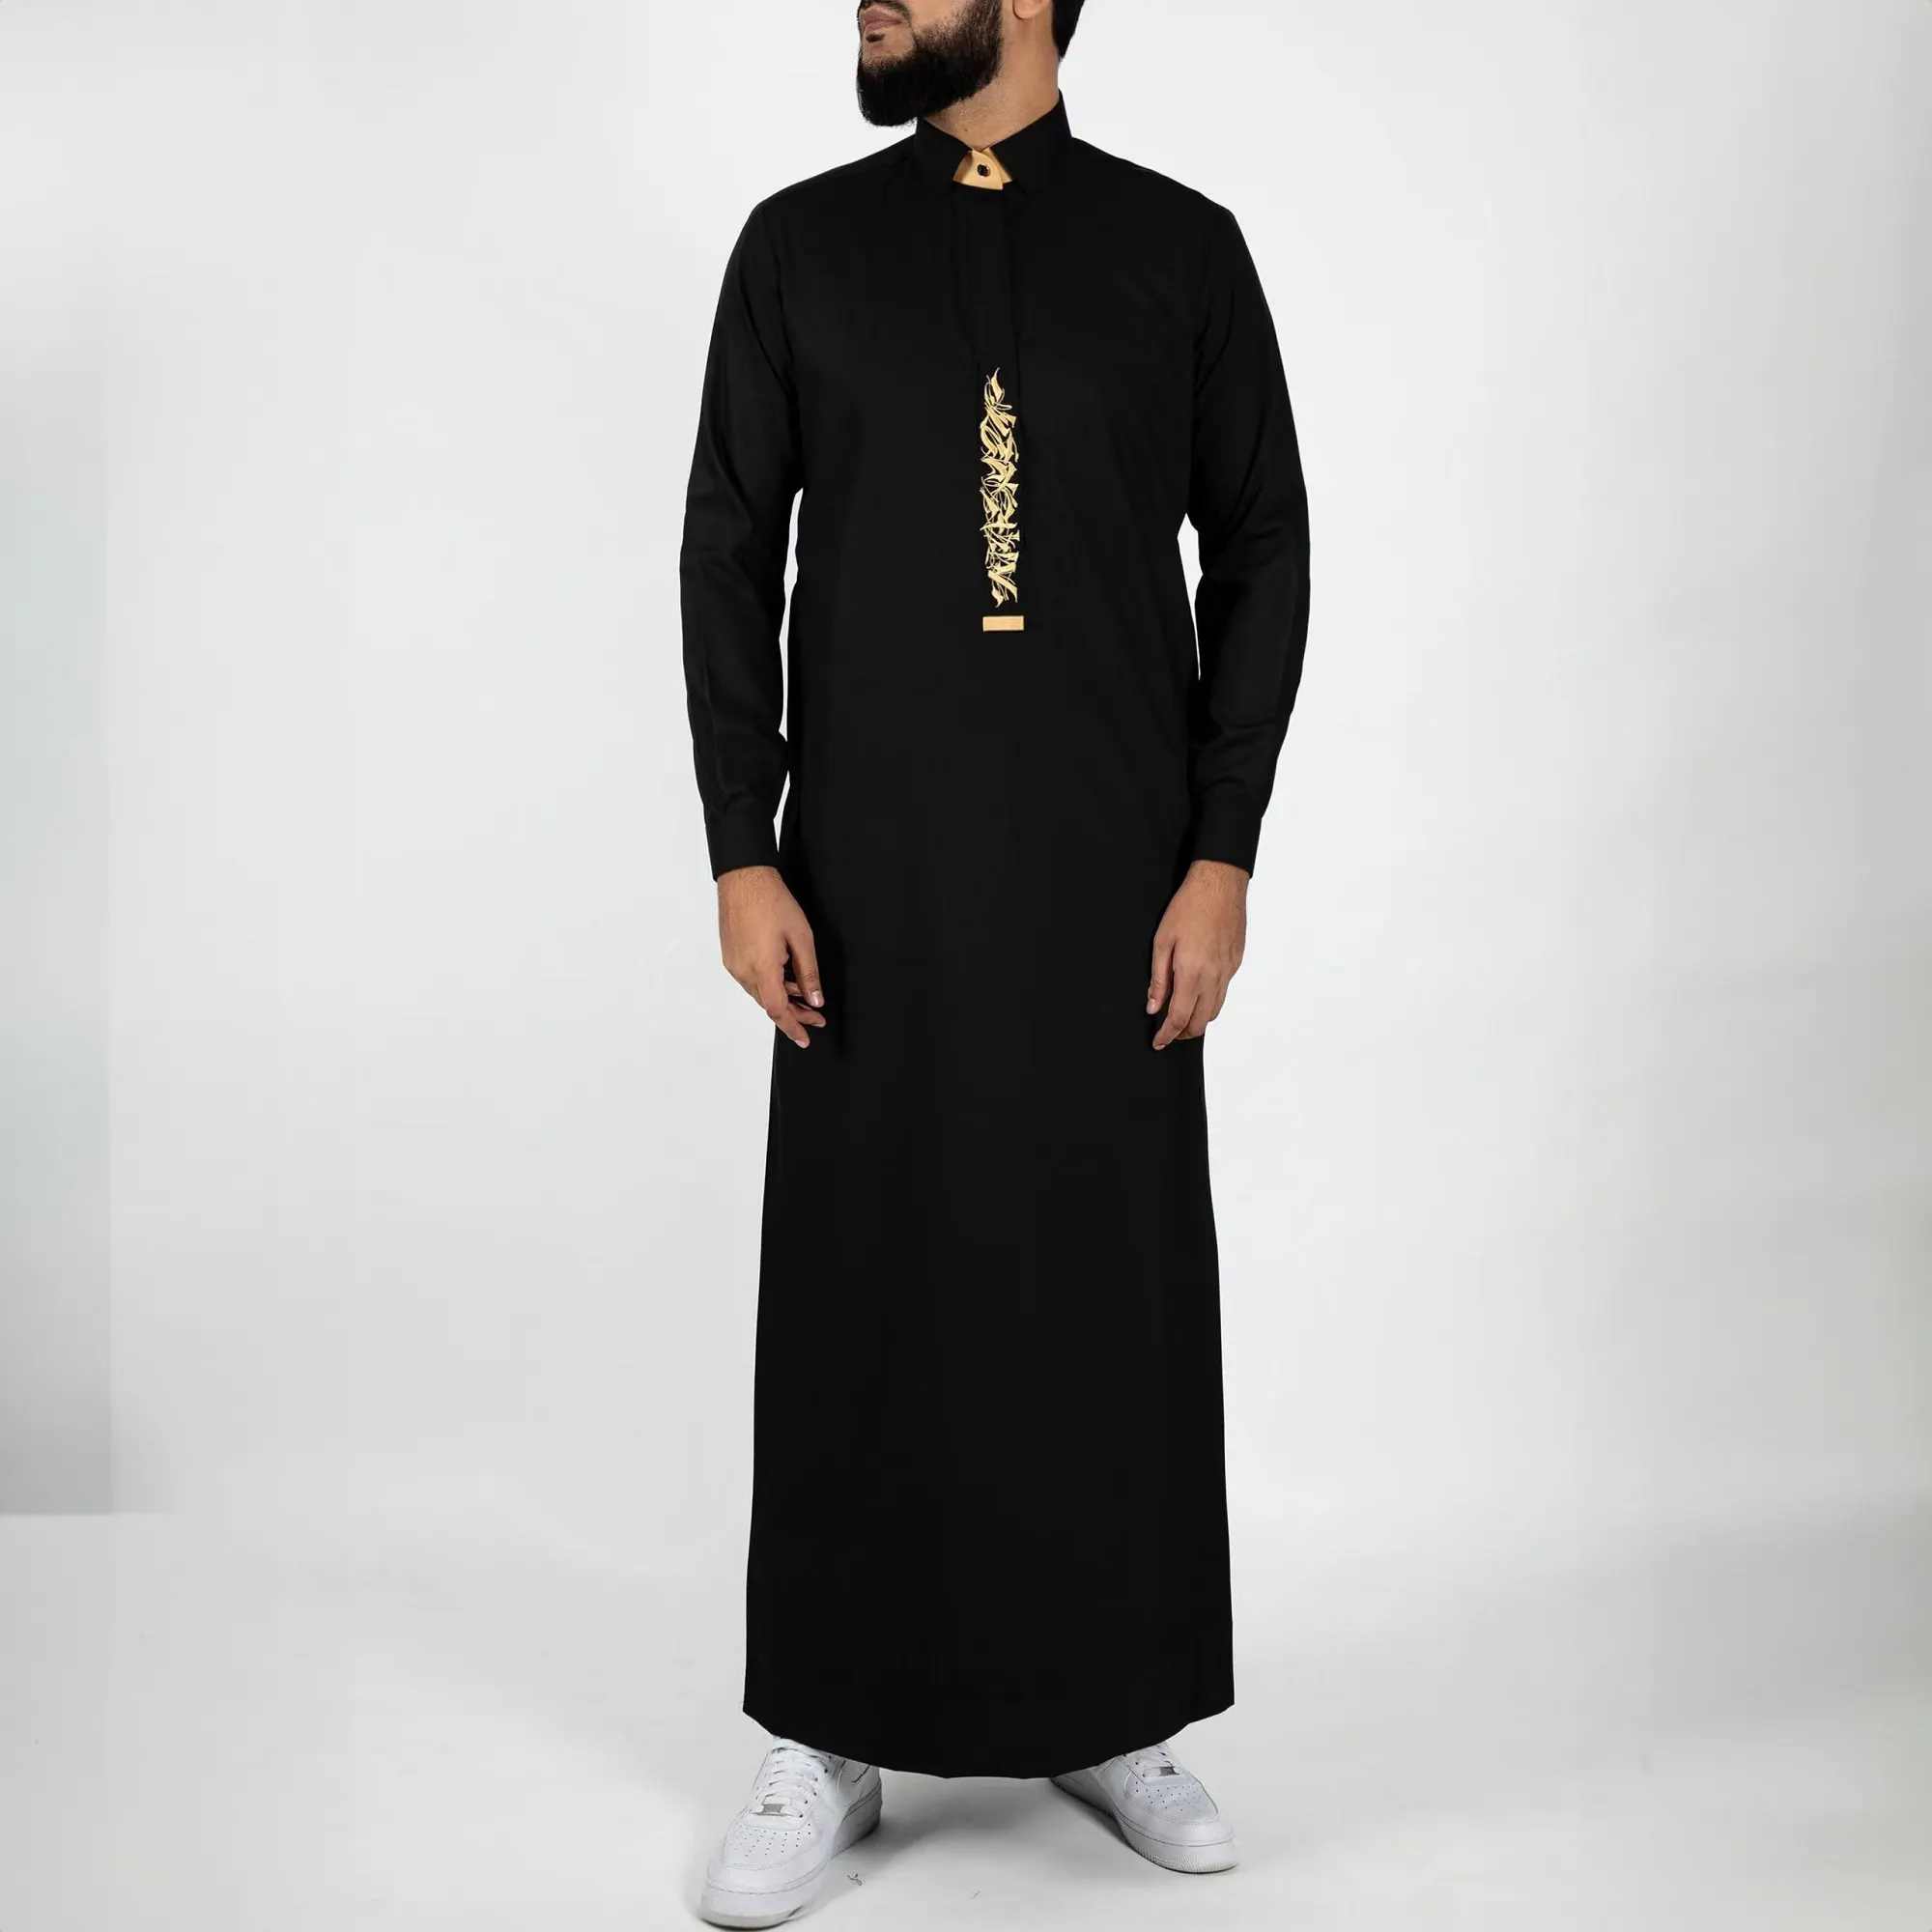 Timur Tengah Pria Arab thobe jubba gamis untuk pria ukuran besar jubah Muslim kasual bordir mewah pakaian Islam